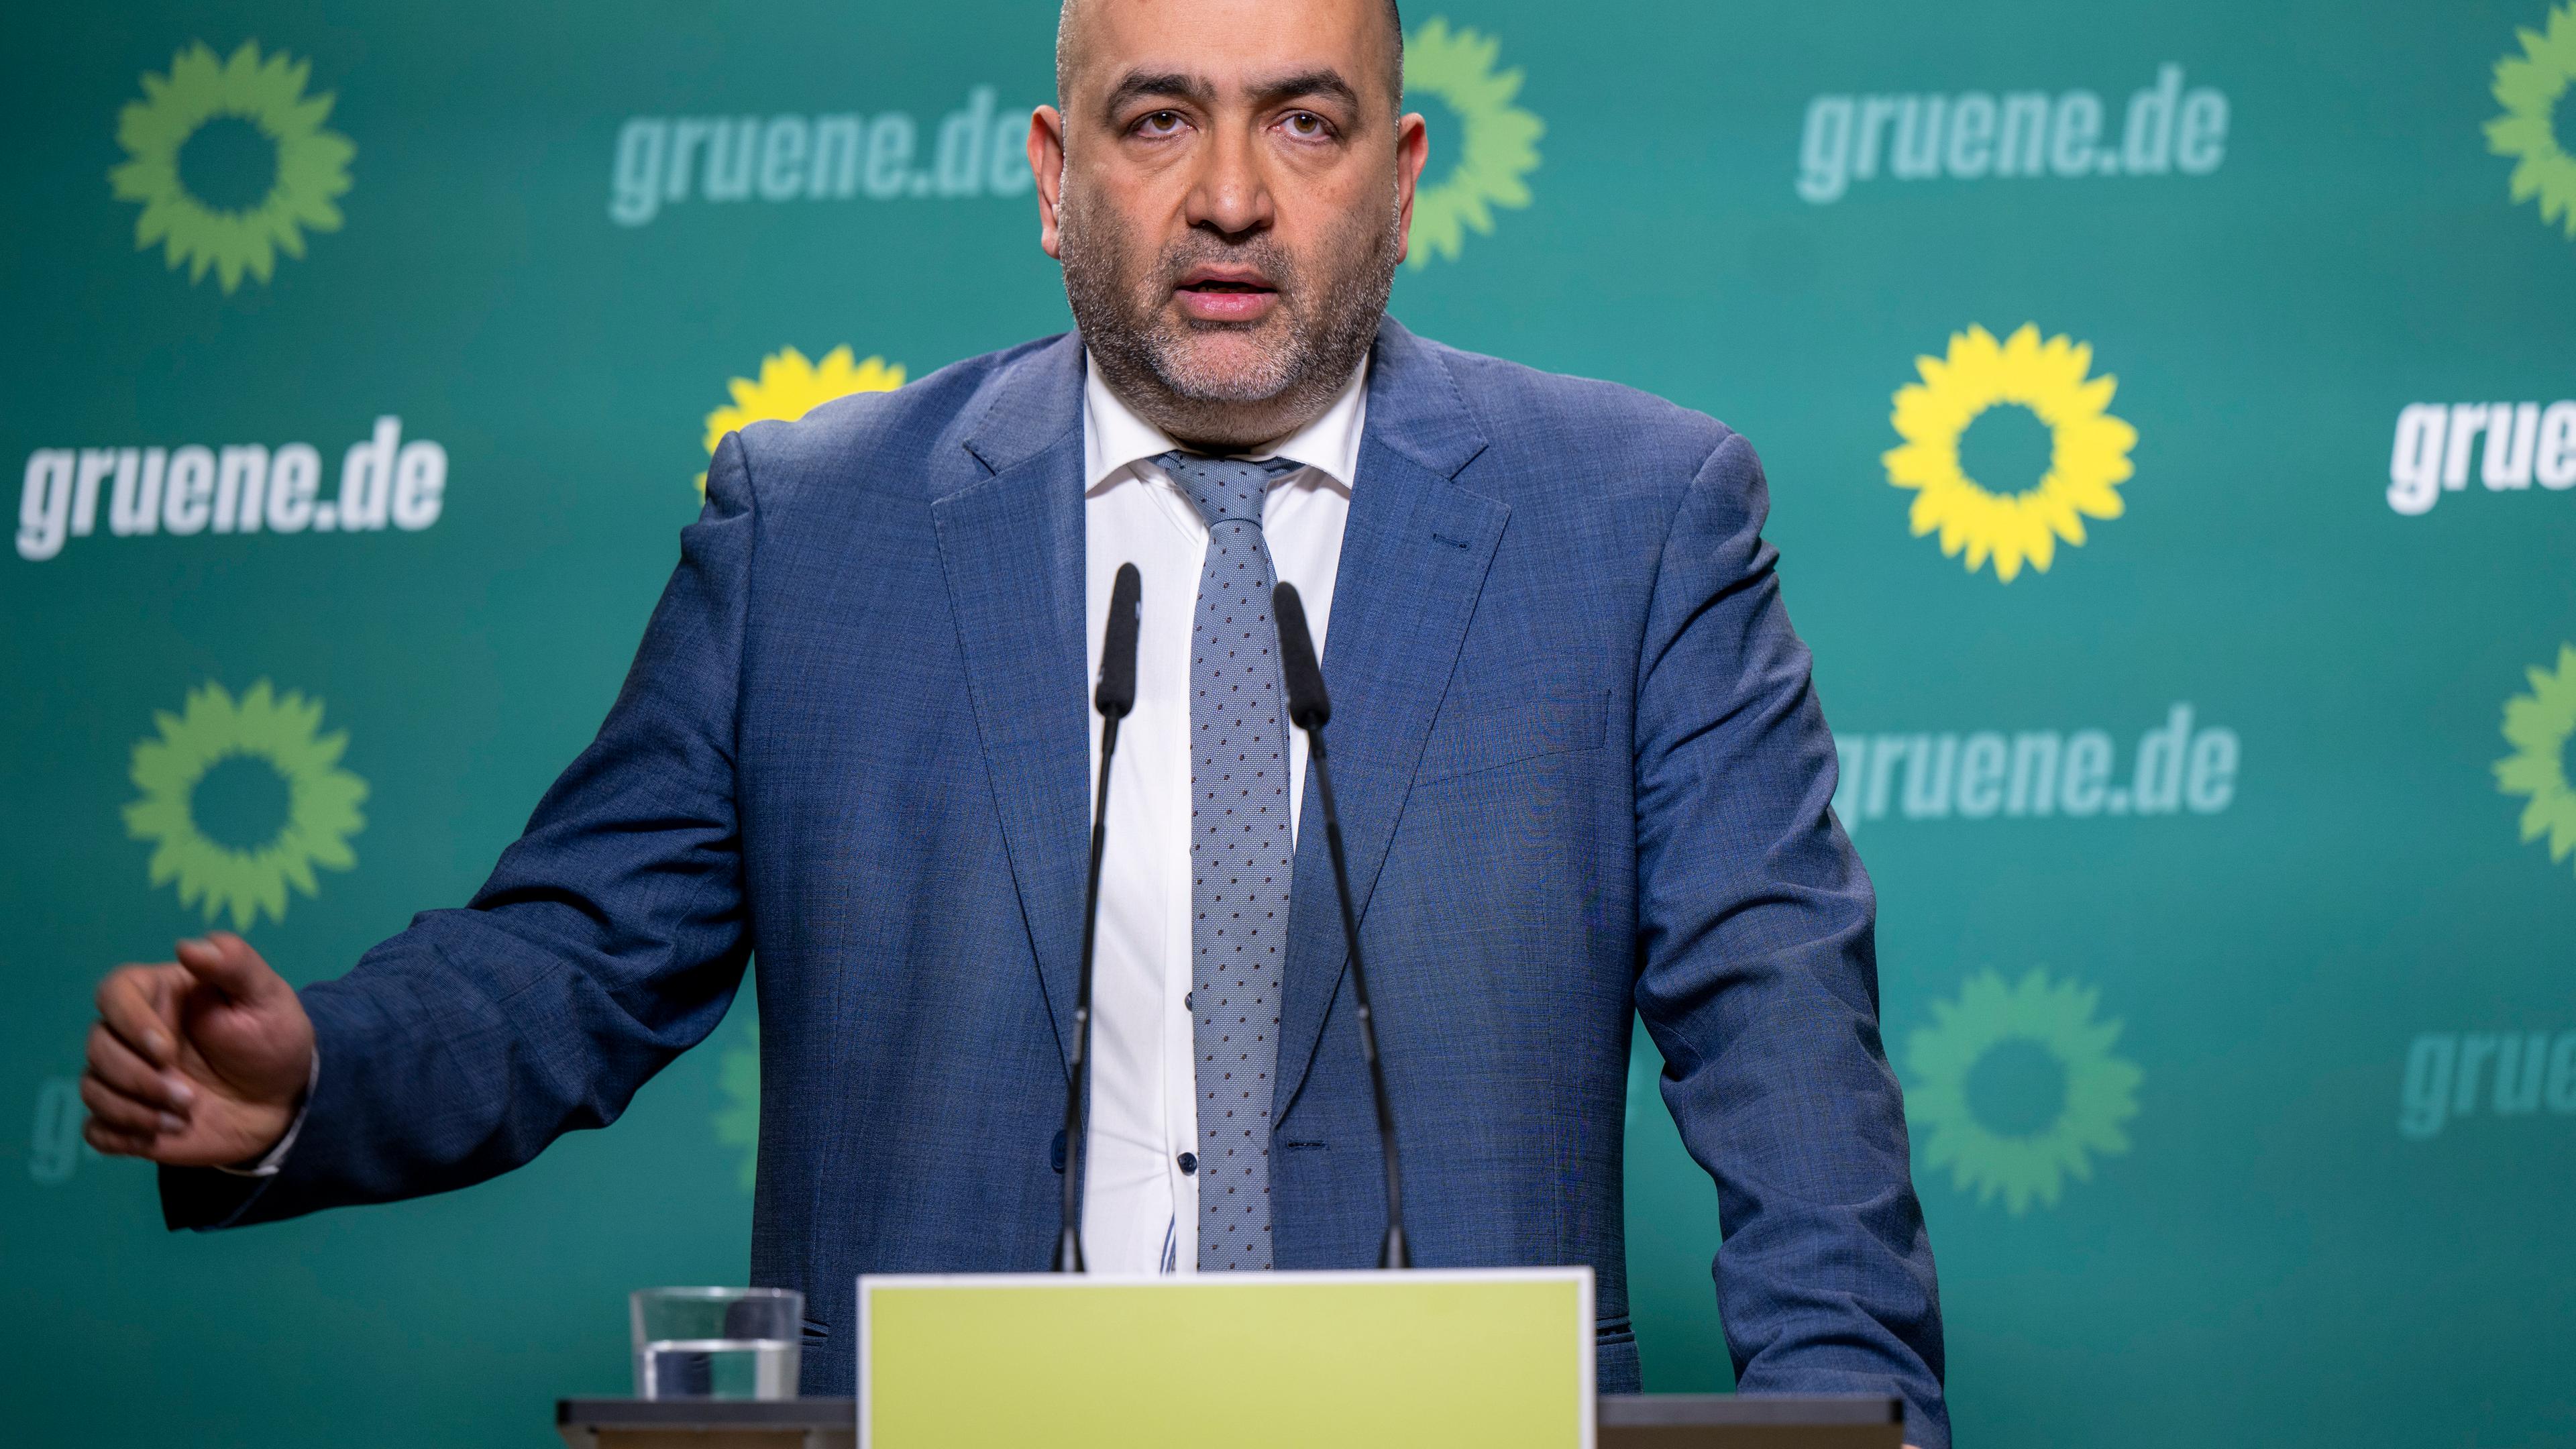 Omid Nouripour, Bundesvorsitzender von Bündnis 90/Die Grünen, spricht bei einer Pressekonferenz anlässlich der Jahresauftaktklausur seiner Partei.